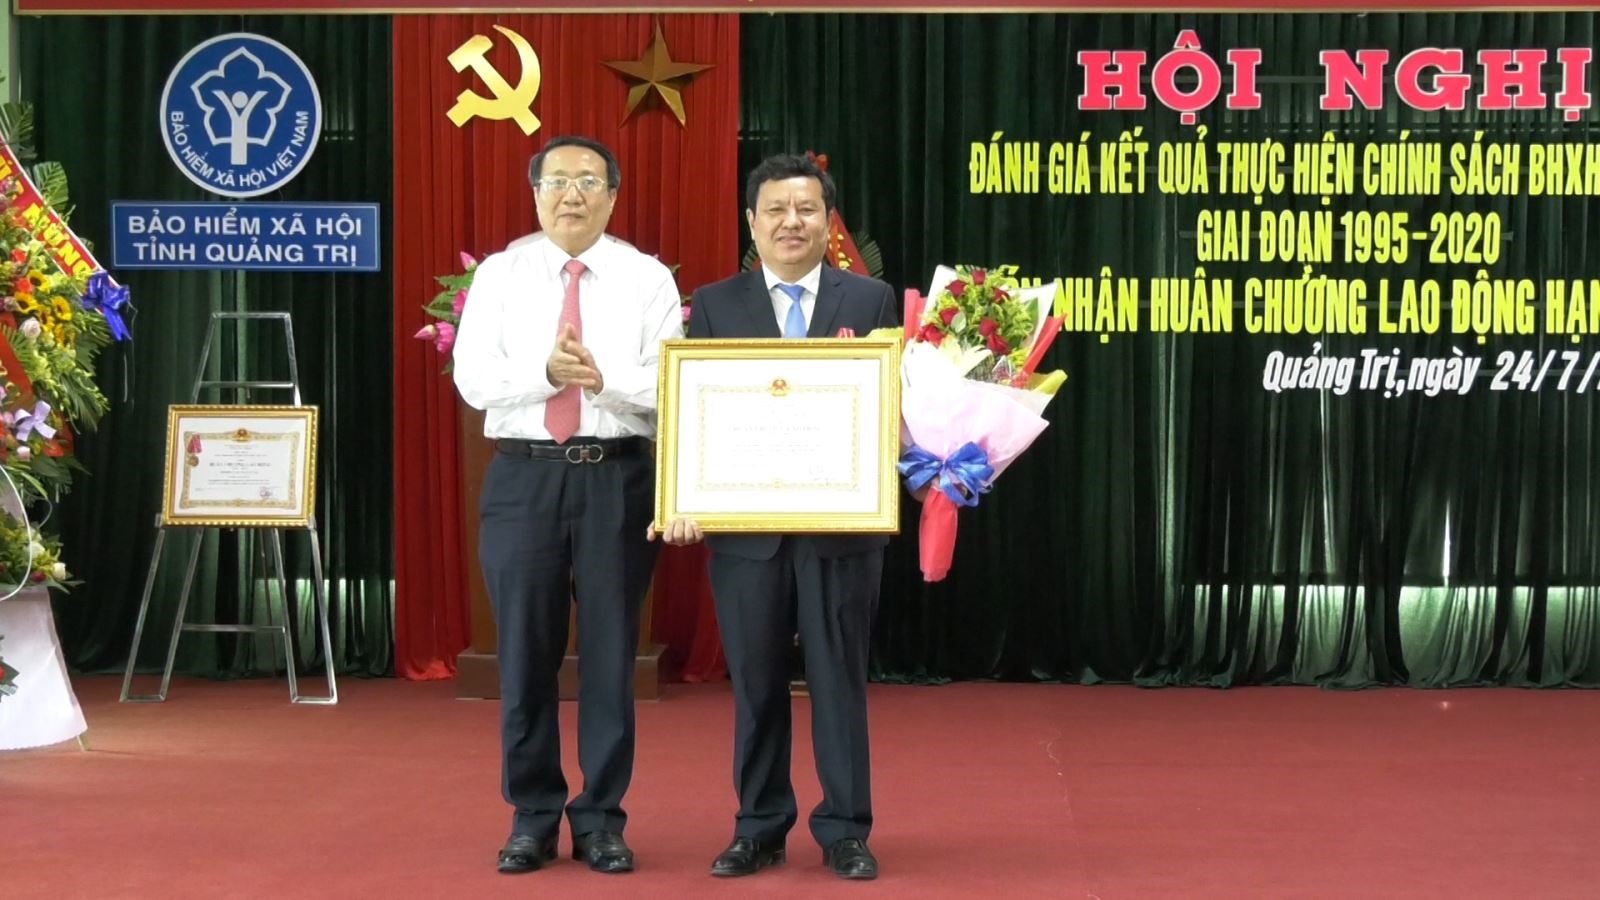 Phó Chủ tịch Thường trực UBND tỉnh Hà Sỹ Đồng trao Huân chương Lao động hạng Nhất của Chủ tịch nước cho BHXH tỉnh